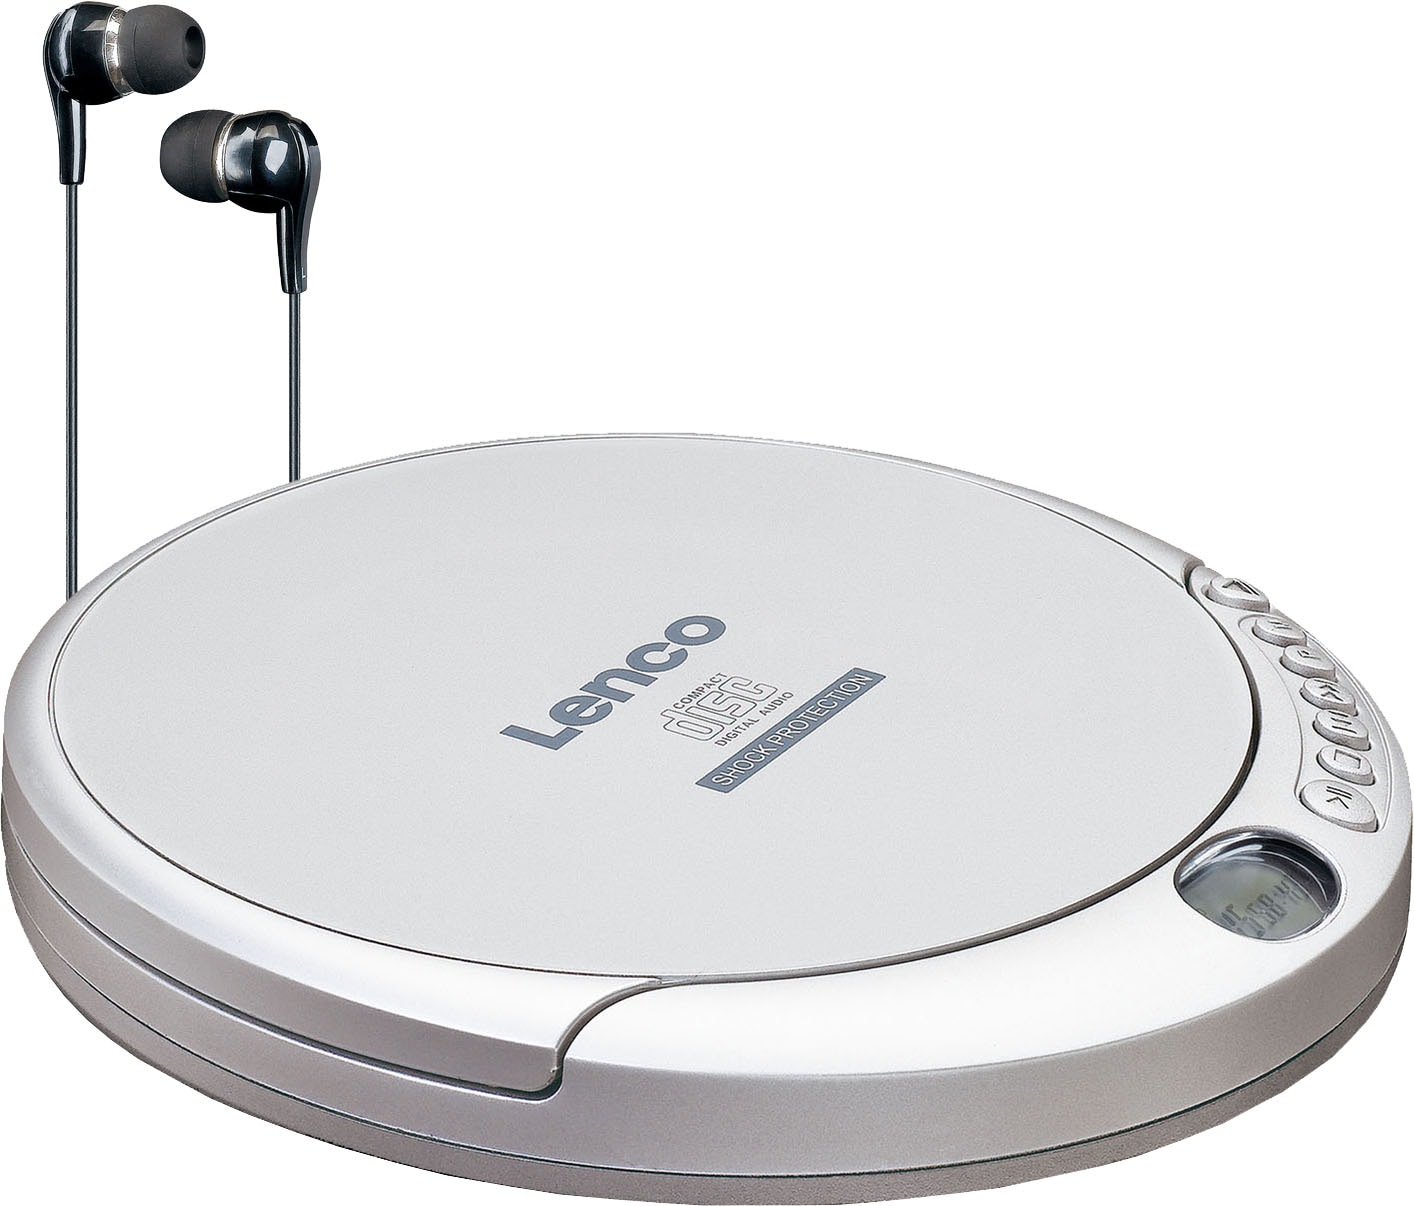 CD-Player online kaufen | Audio-Geräte in Markenqualität bei OTTO | CD-Radiorecorder